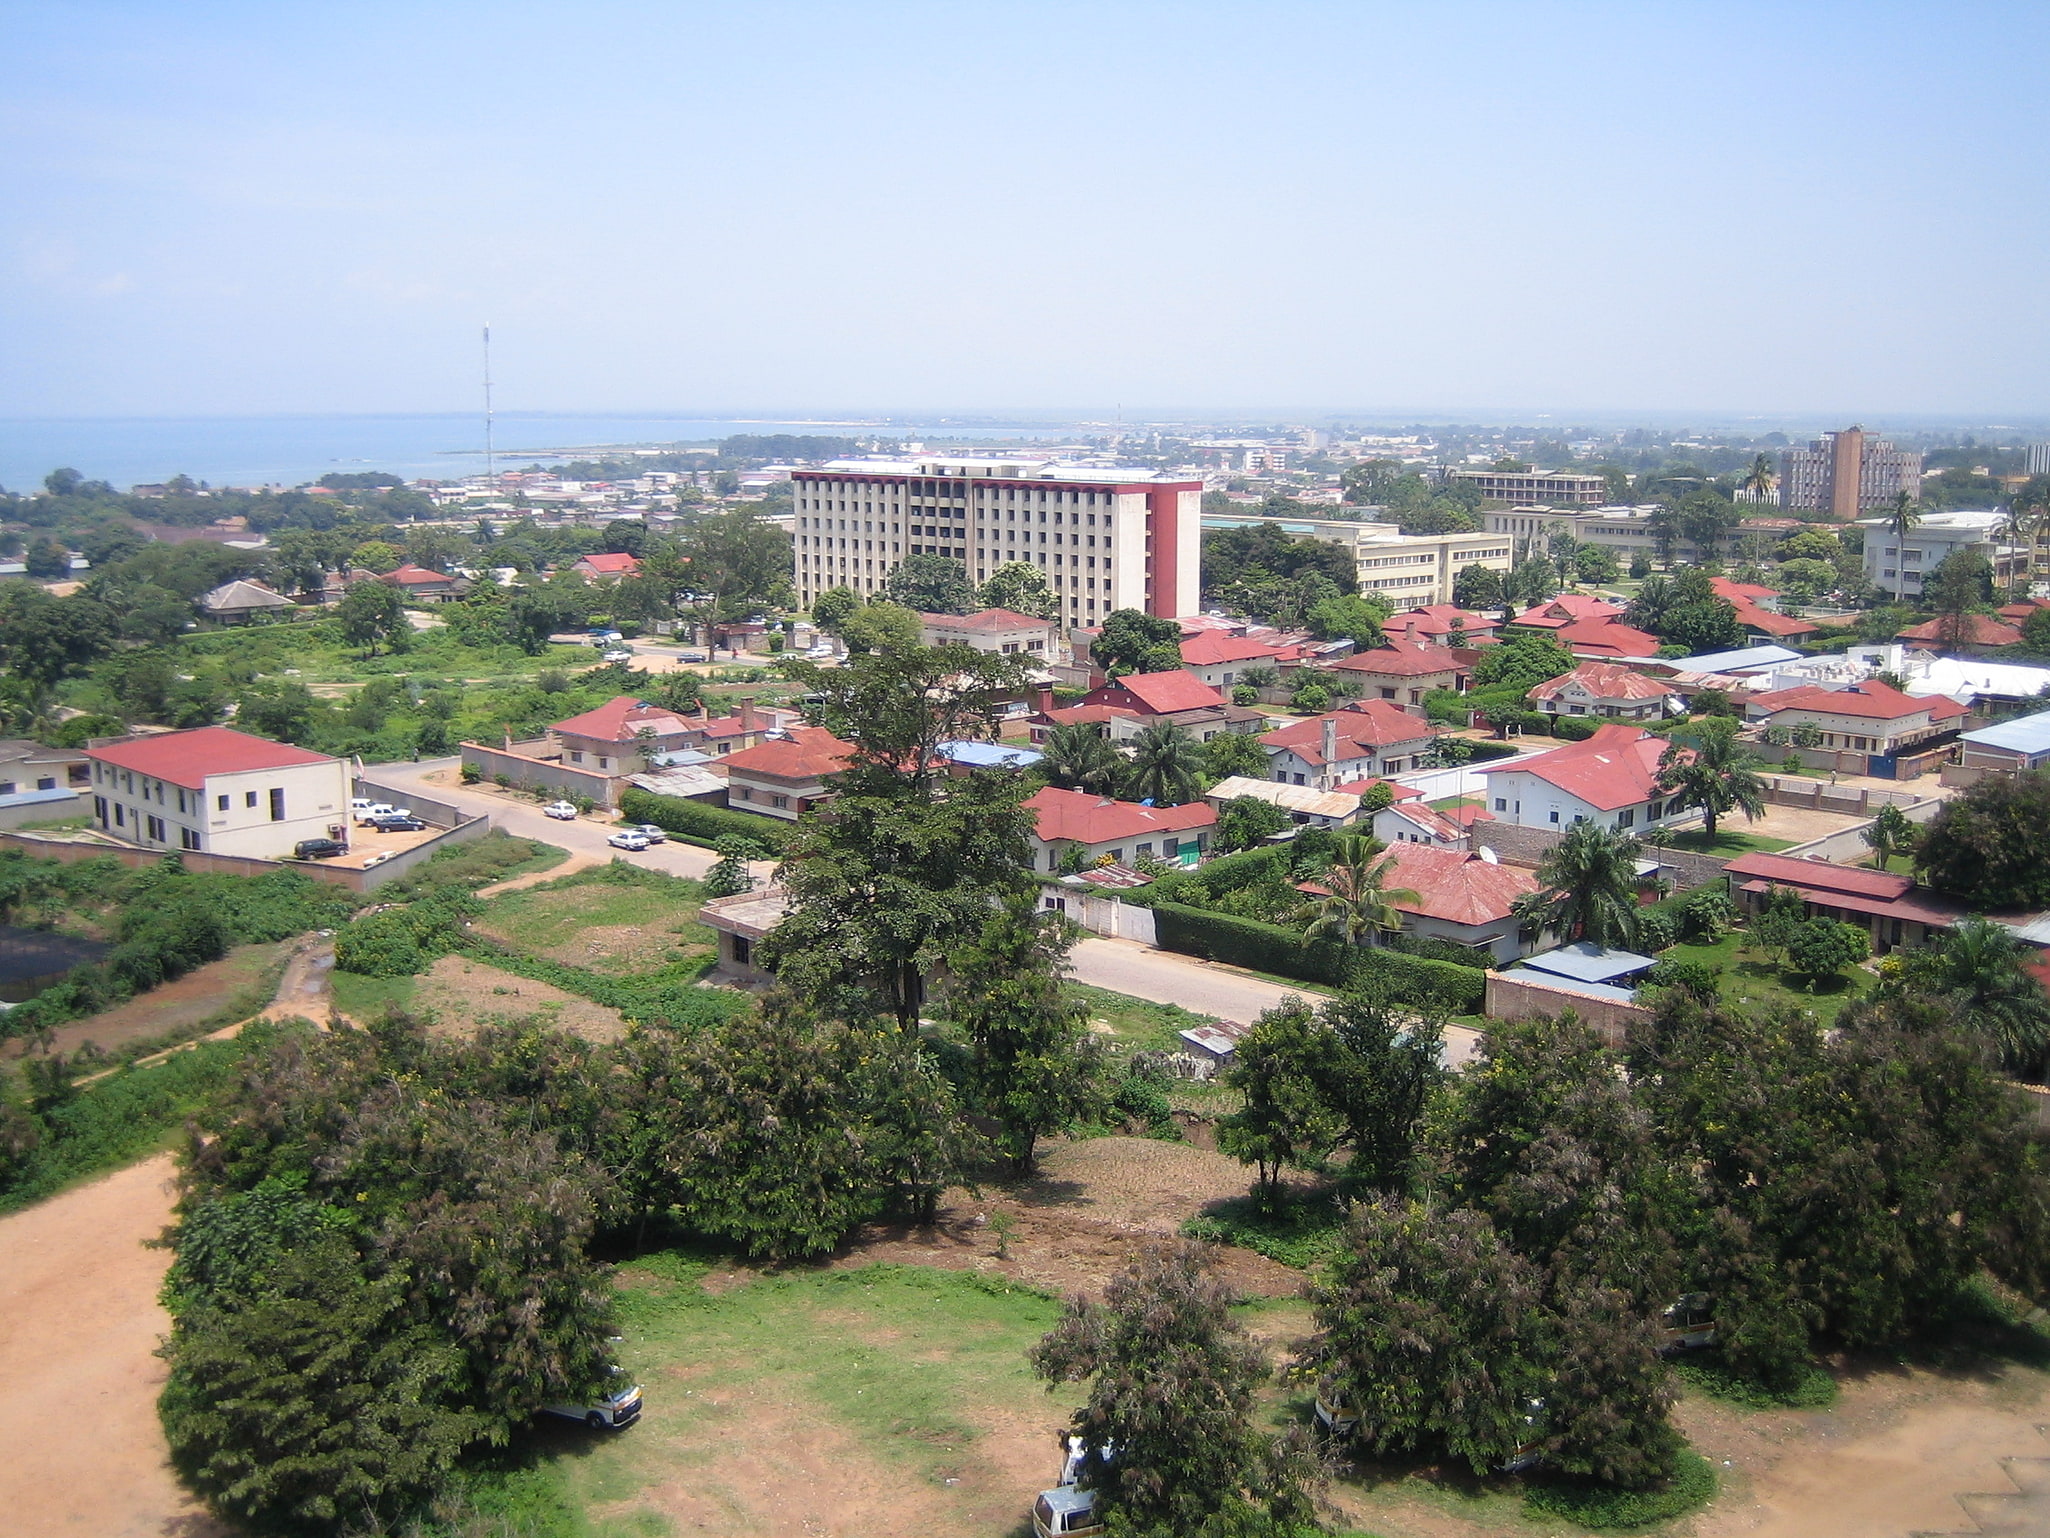 Bużumbura, Burundi